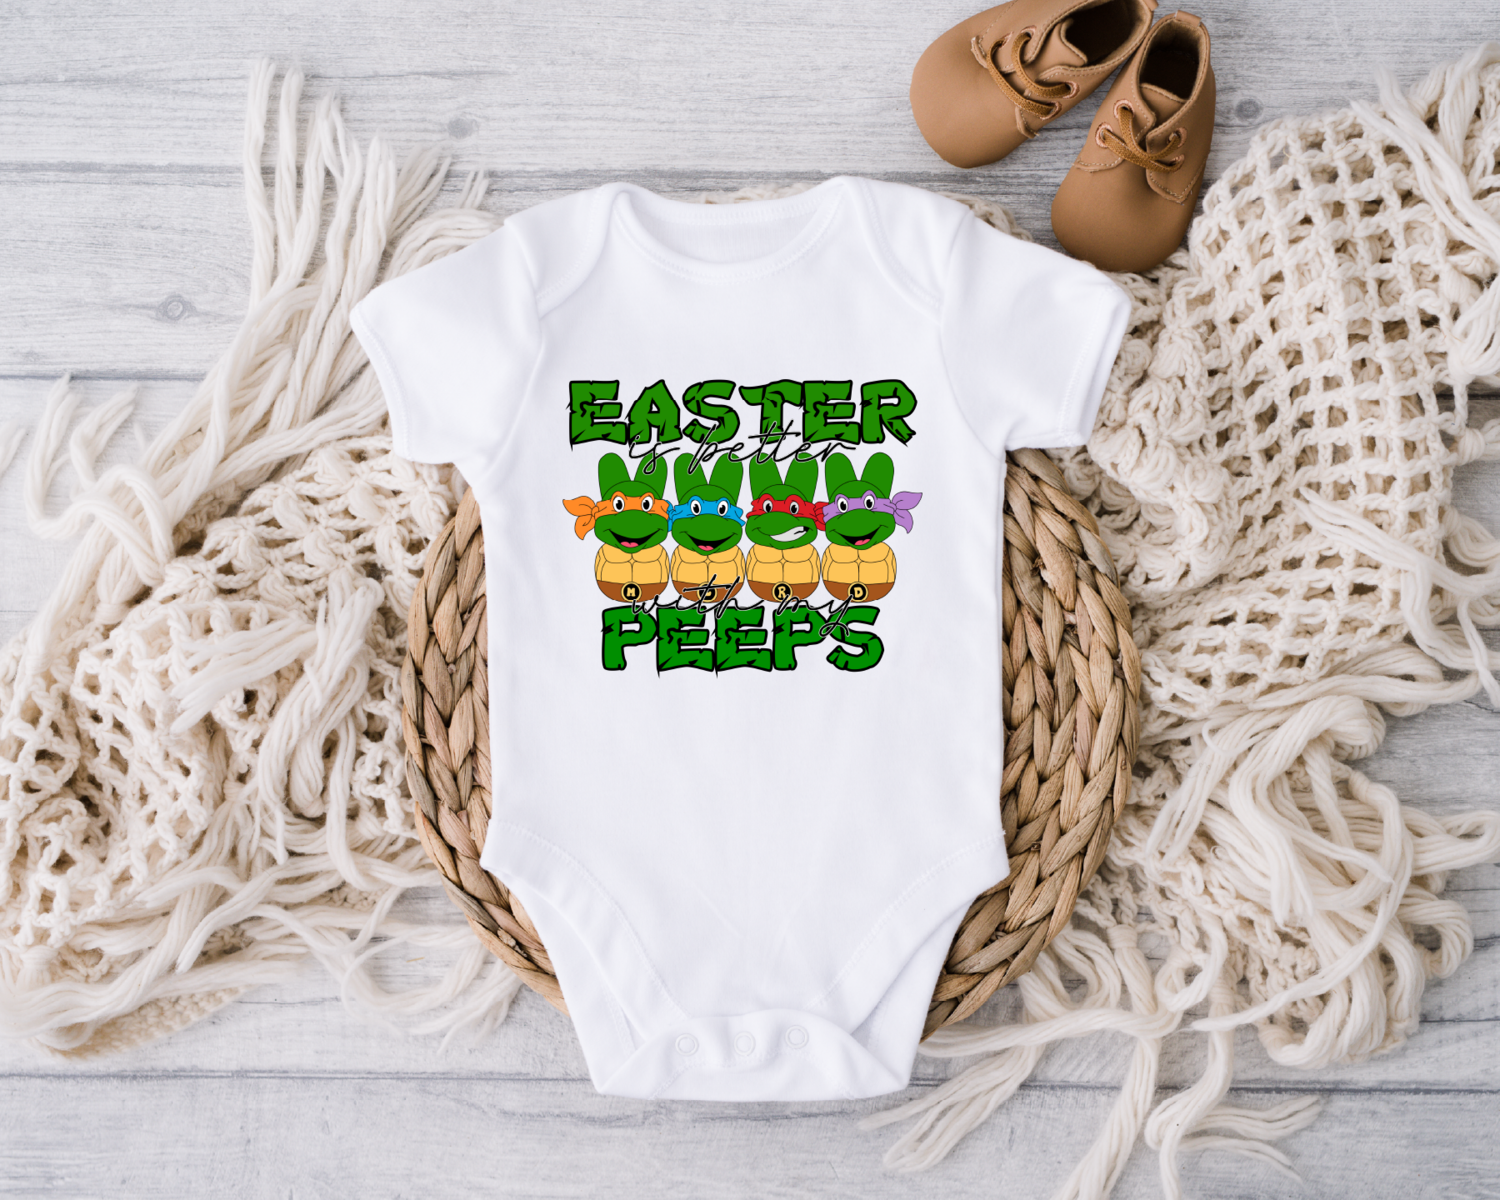 Easter Is Better With My Peeps Onesie, Ninja Peeps Bodysuit, Happy Easter Day Onesie, Turtles Toddler Shirt